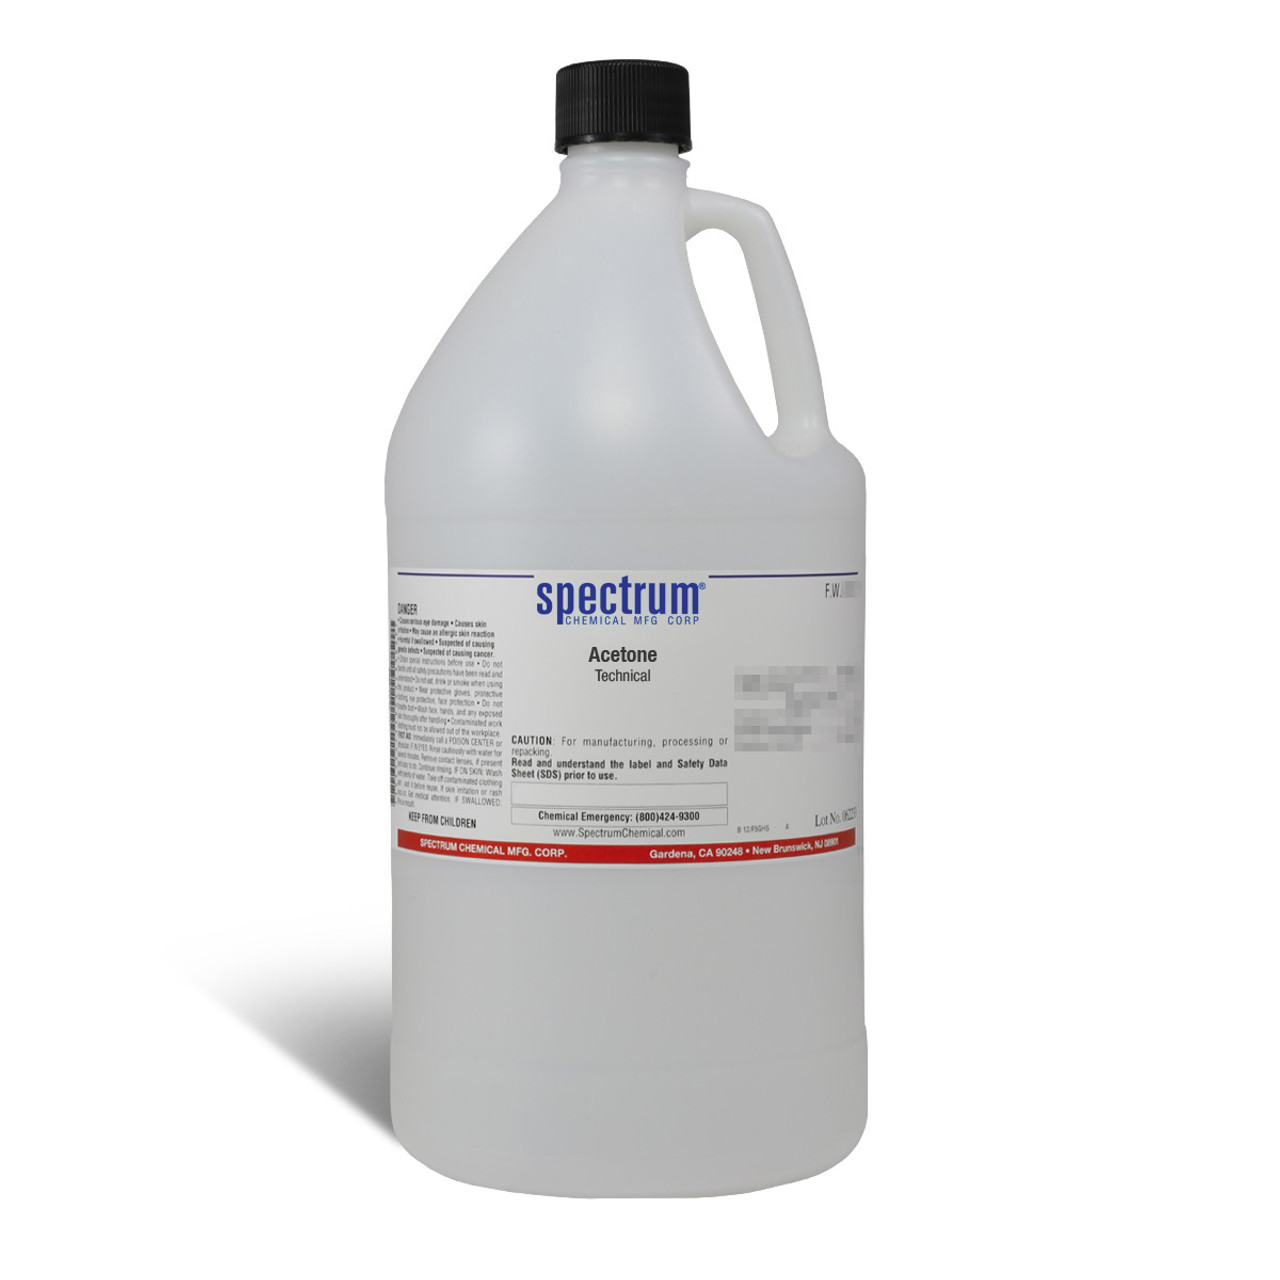 Acetone 99% - 1 Gallon